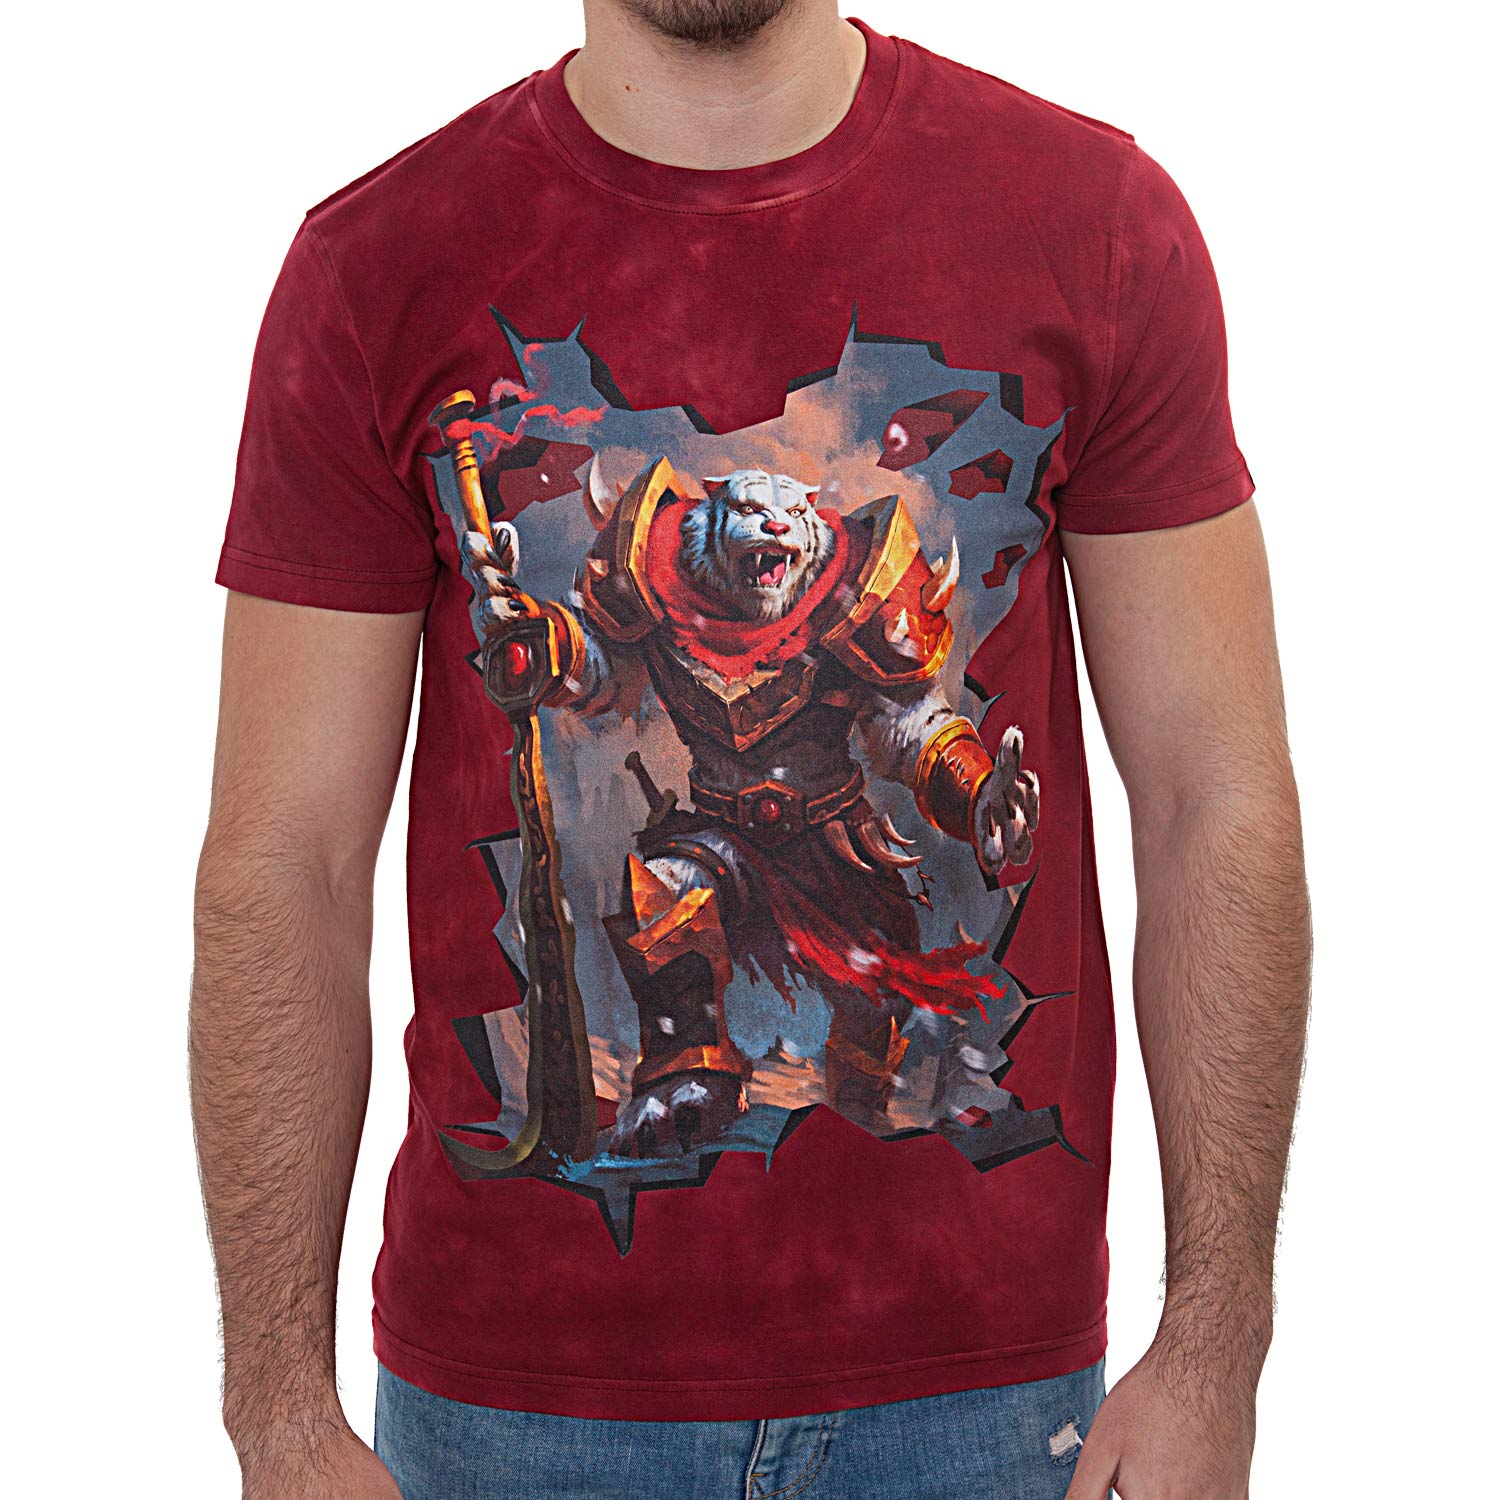 La Camiseta The Guardian tiene un dibujo original de un imponente tigre de combate con armadura de hierro.